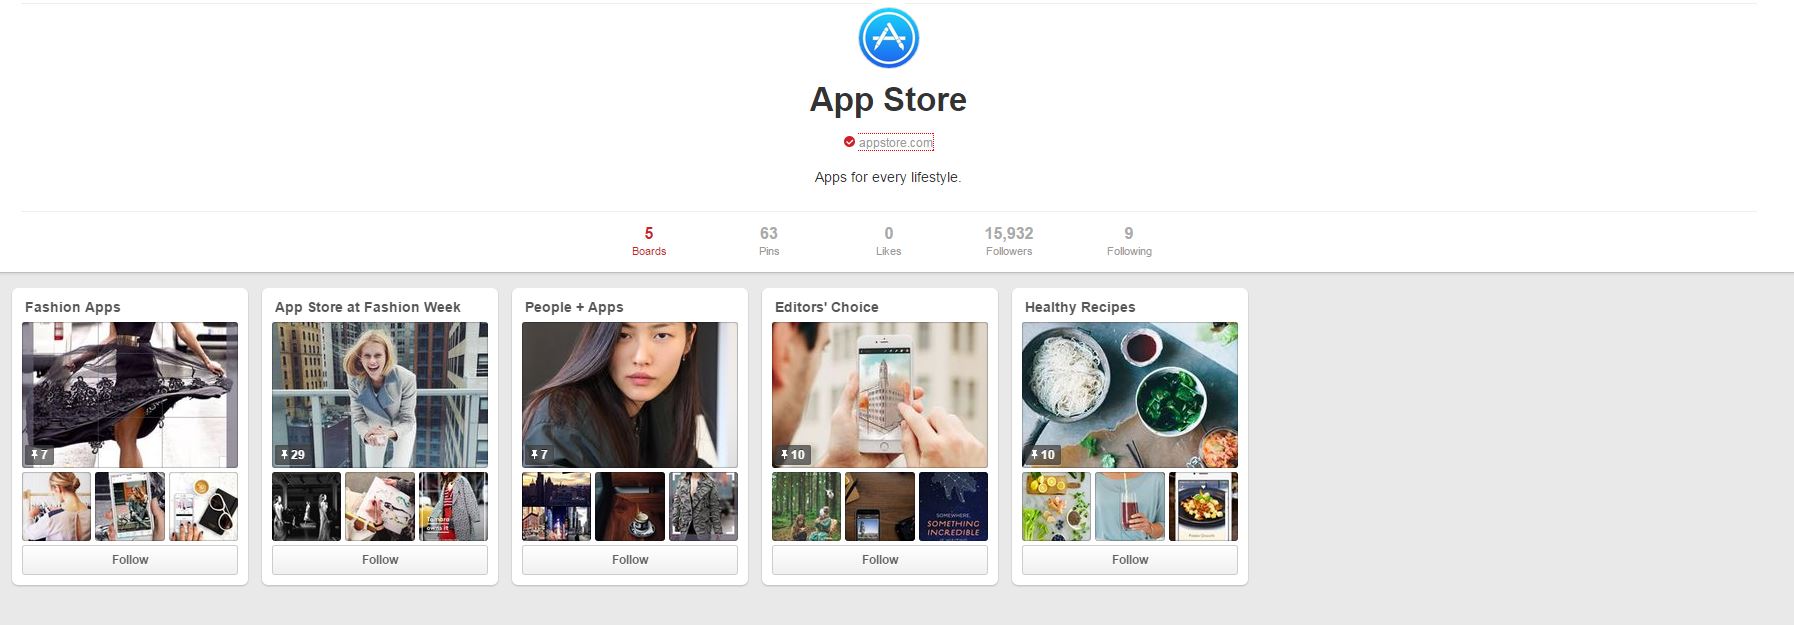 Pinterest App Store Apple